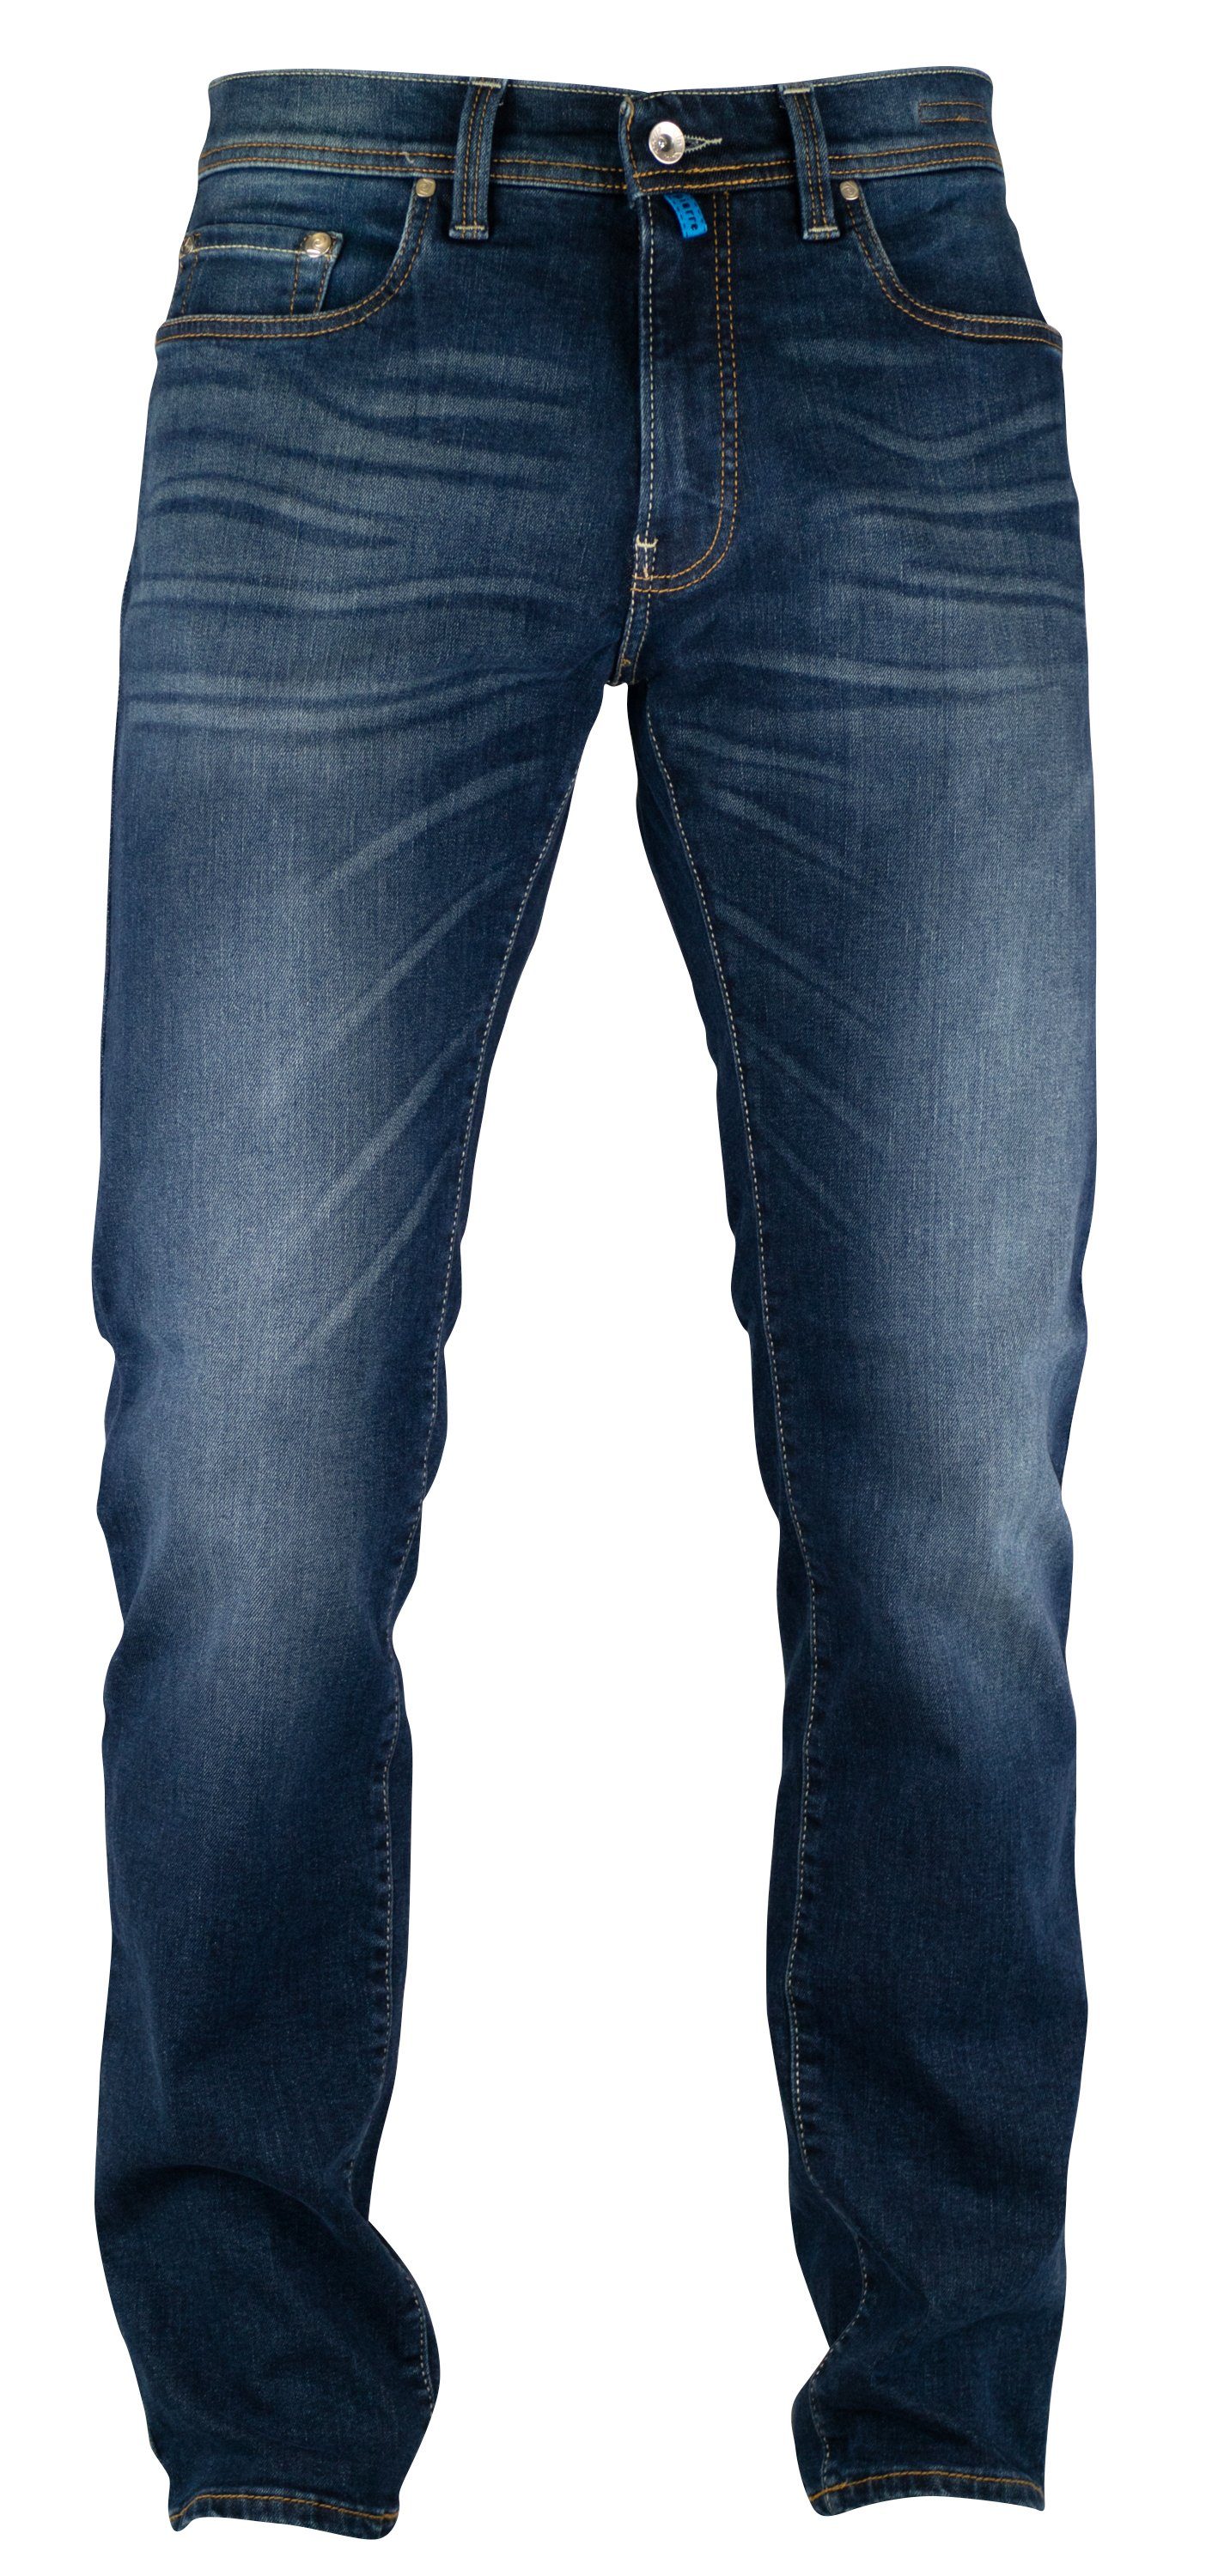 Pierre Cardin 5-Pocket-Jeans PIERRE CARDIN FUTUREFLEX LYON mid sun vintage blue used washed 3451